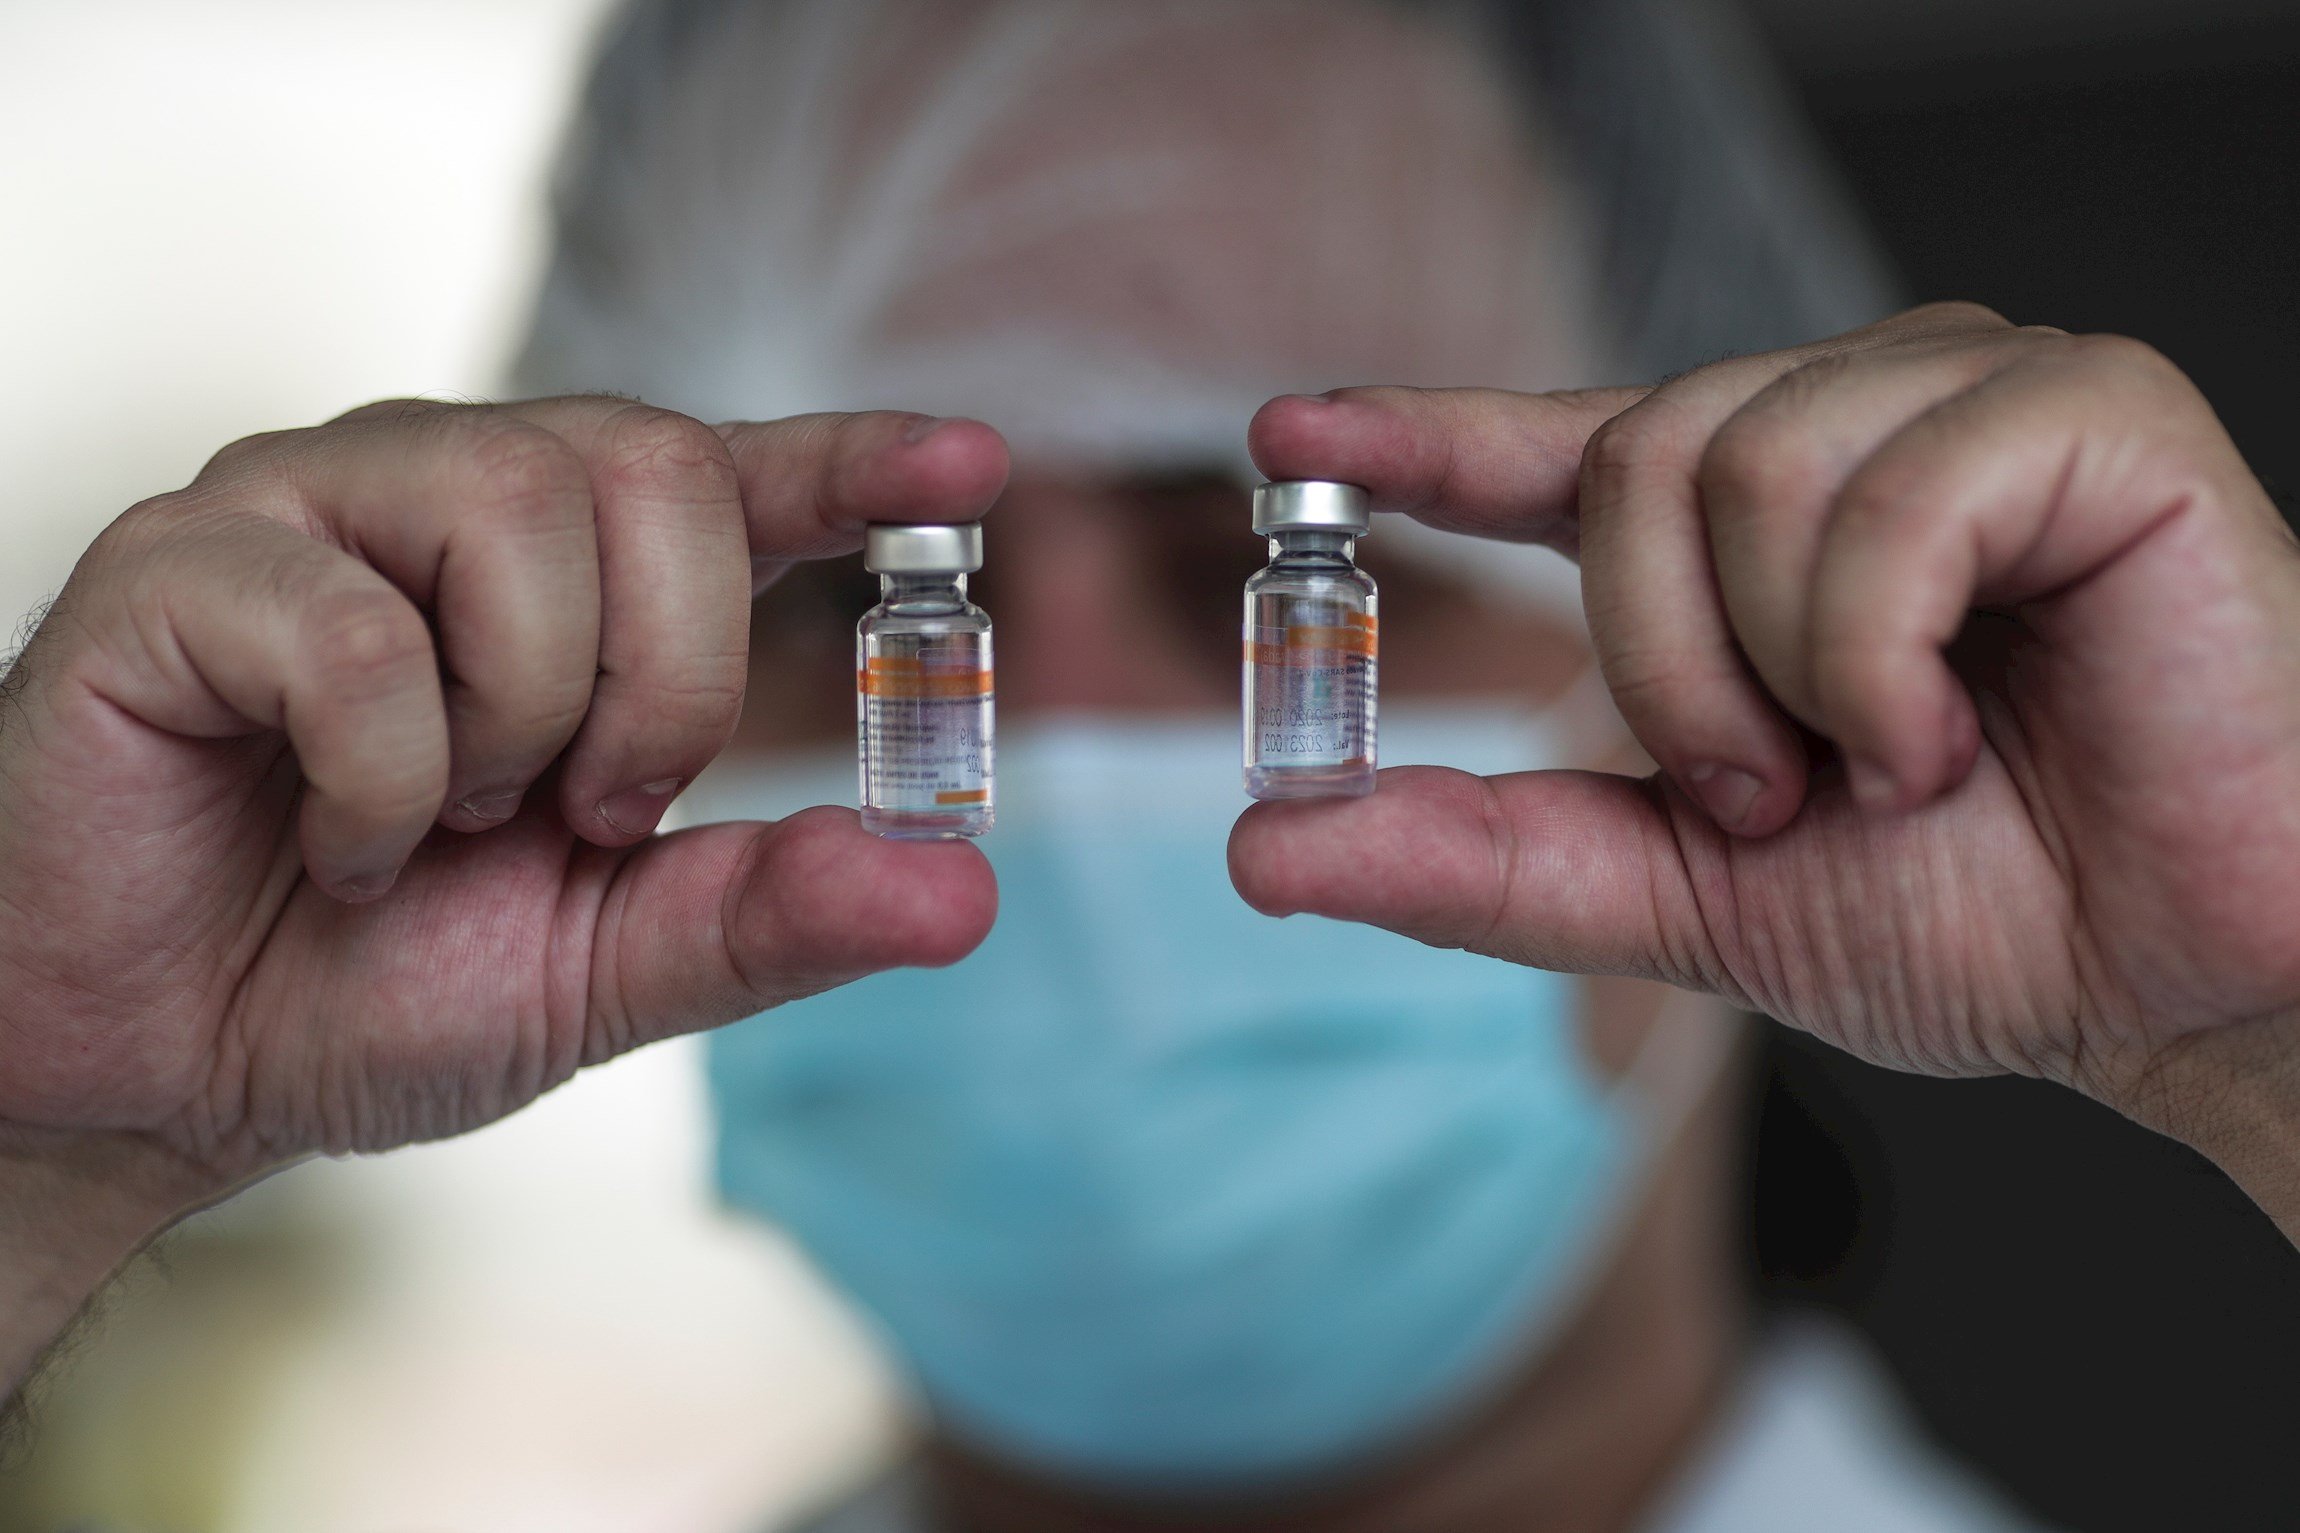 La llegada de vacunas anti-Covid permite reanudar la vacunación en el estado